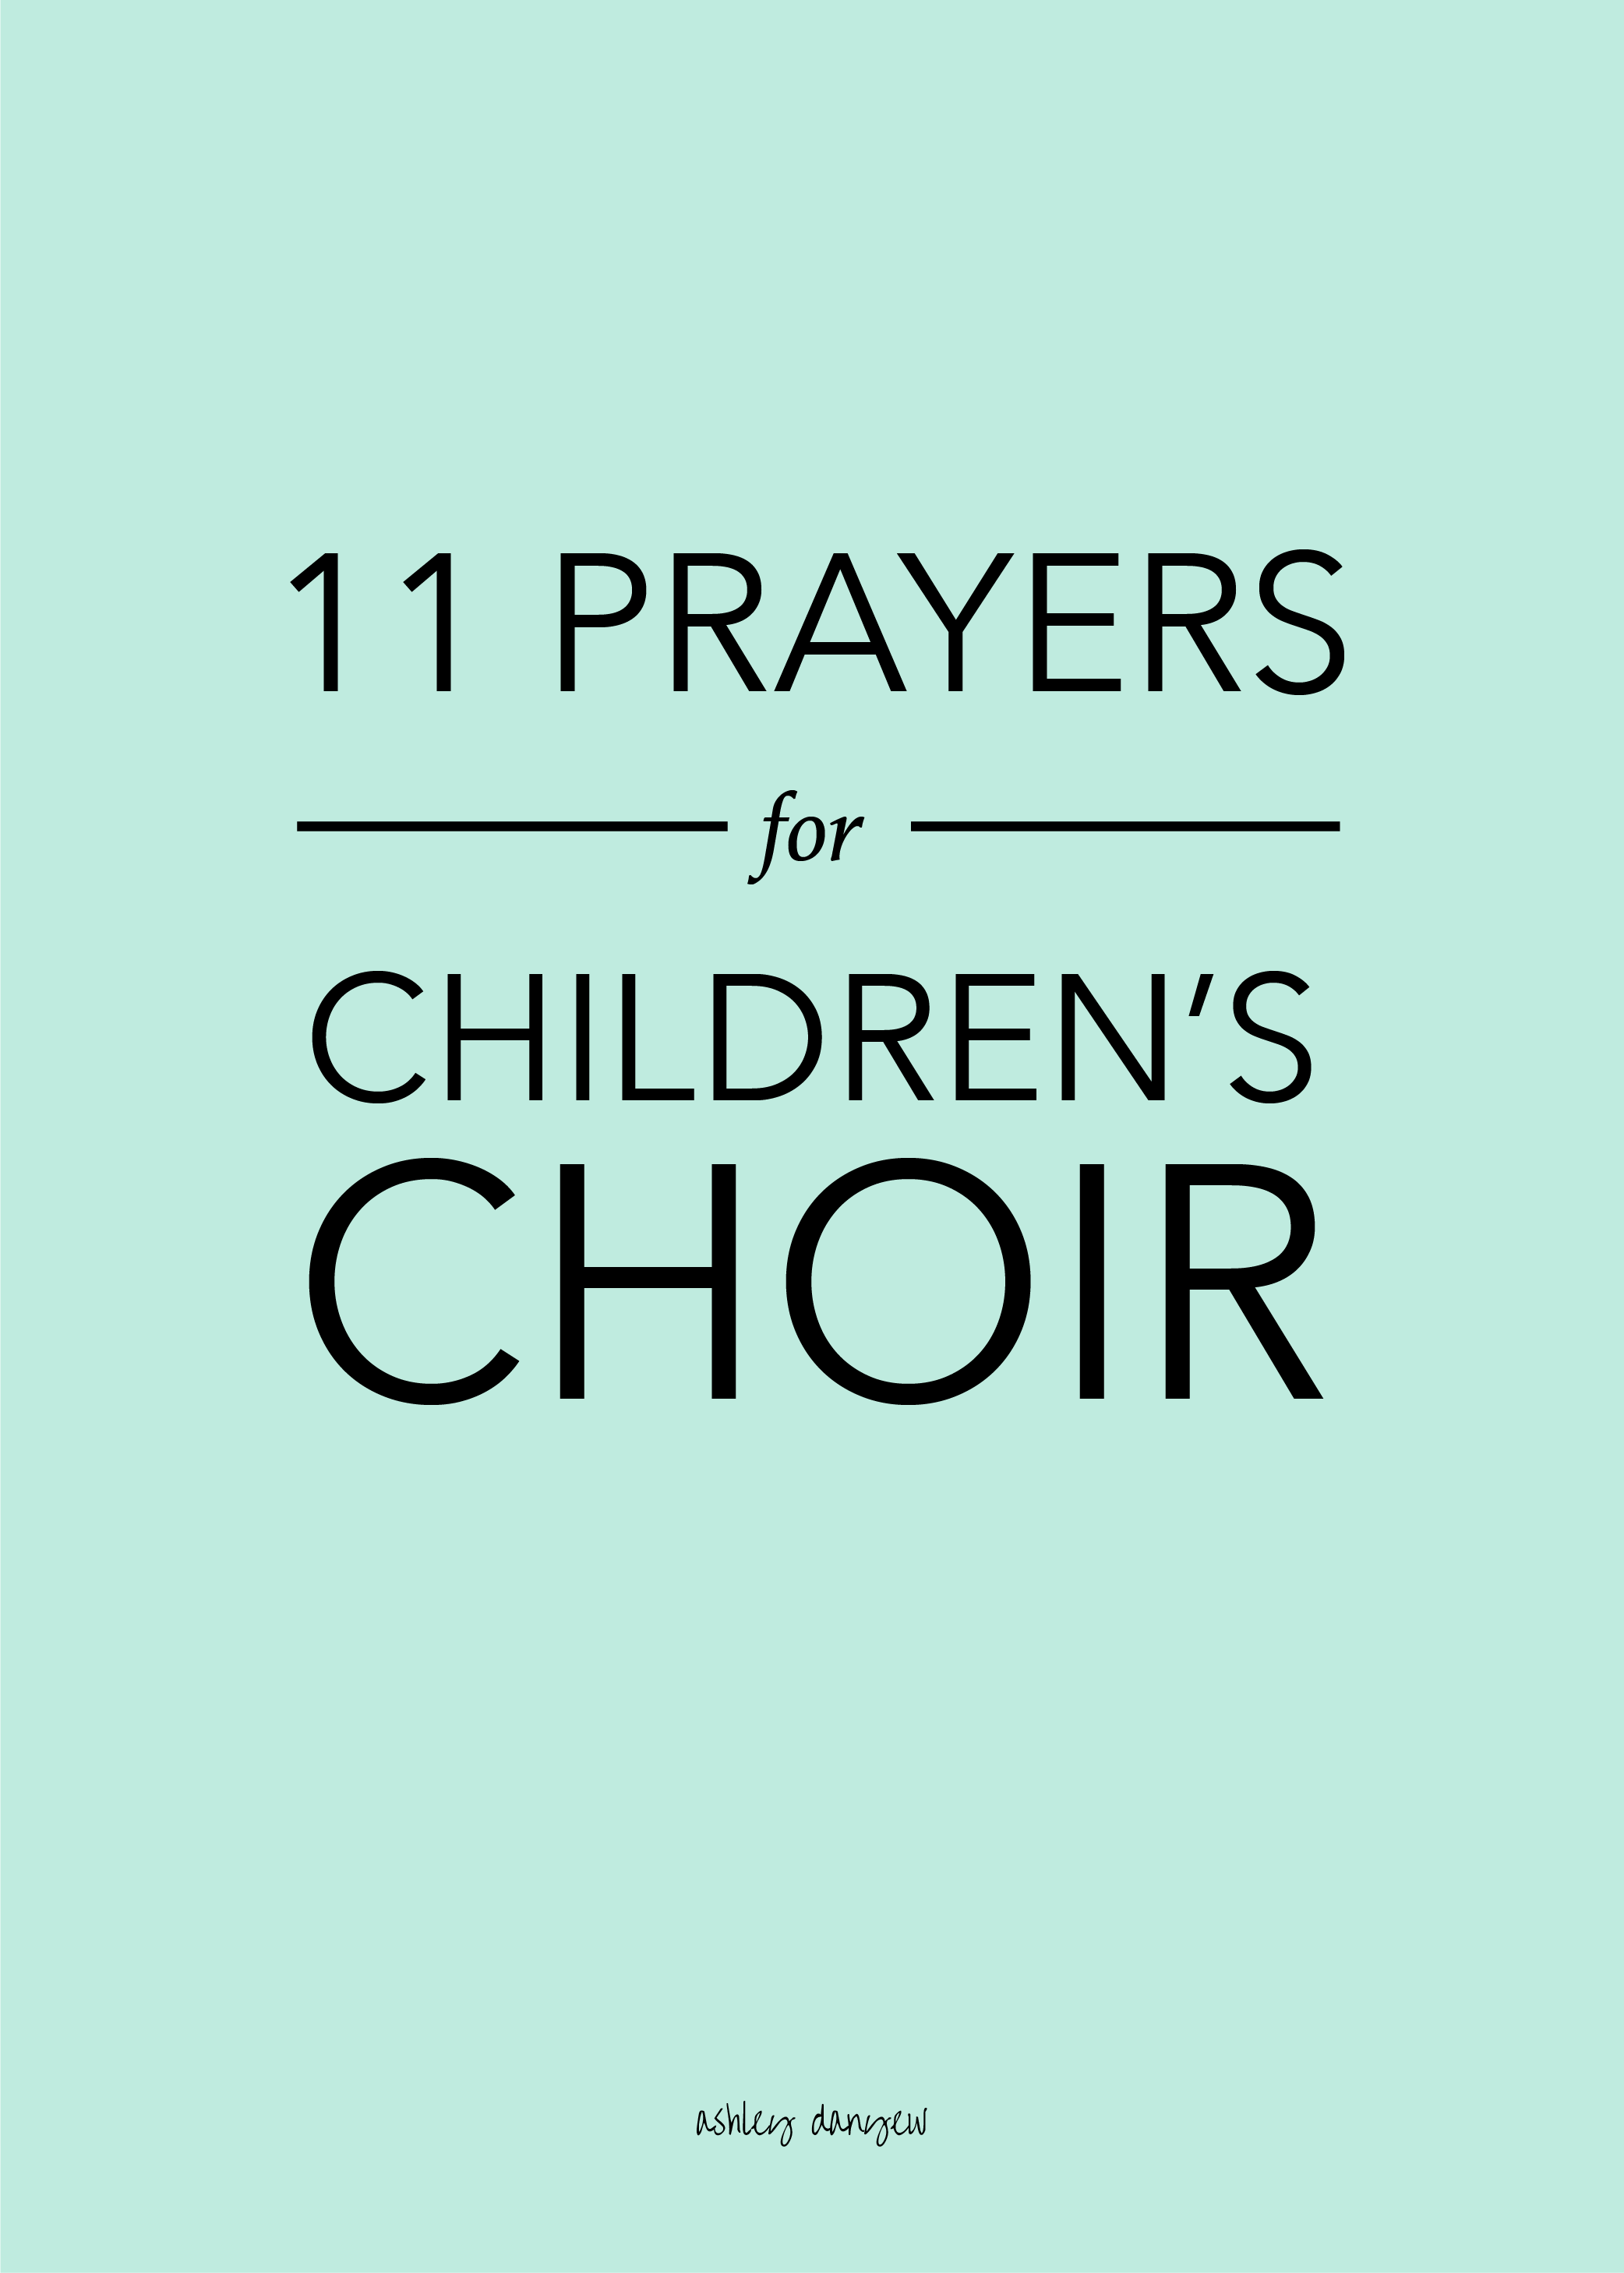 Children's Choir Prayers.png